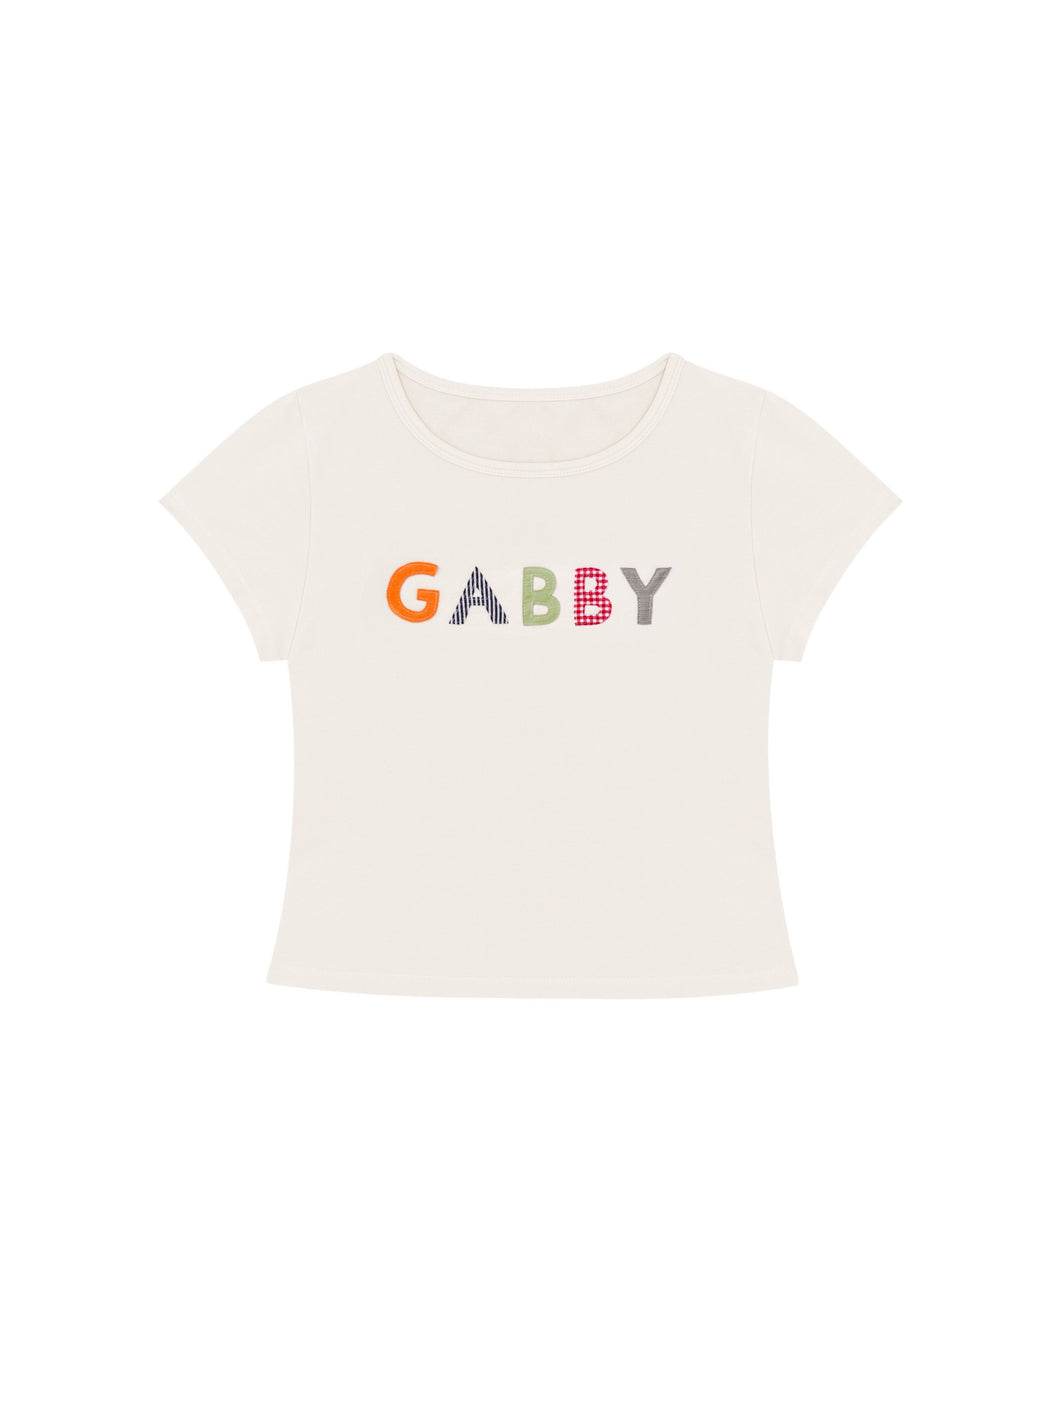 GABBY Baby Tee